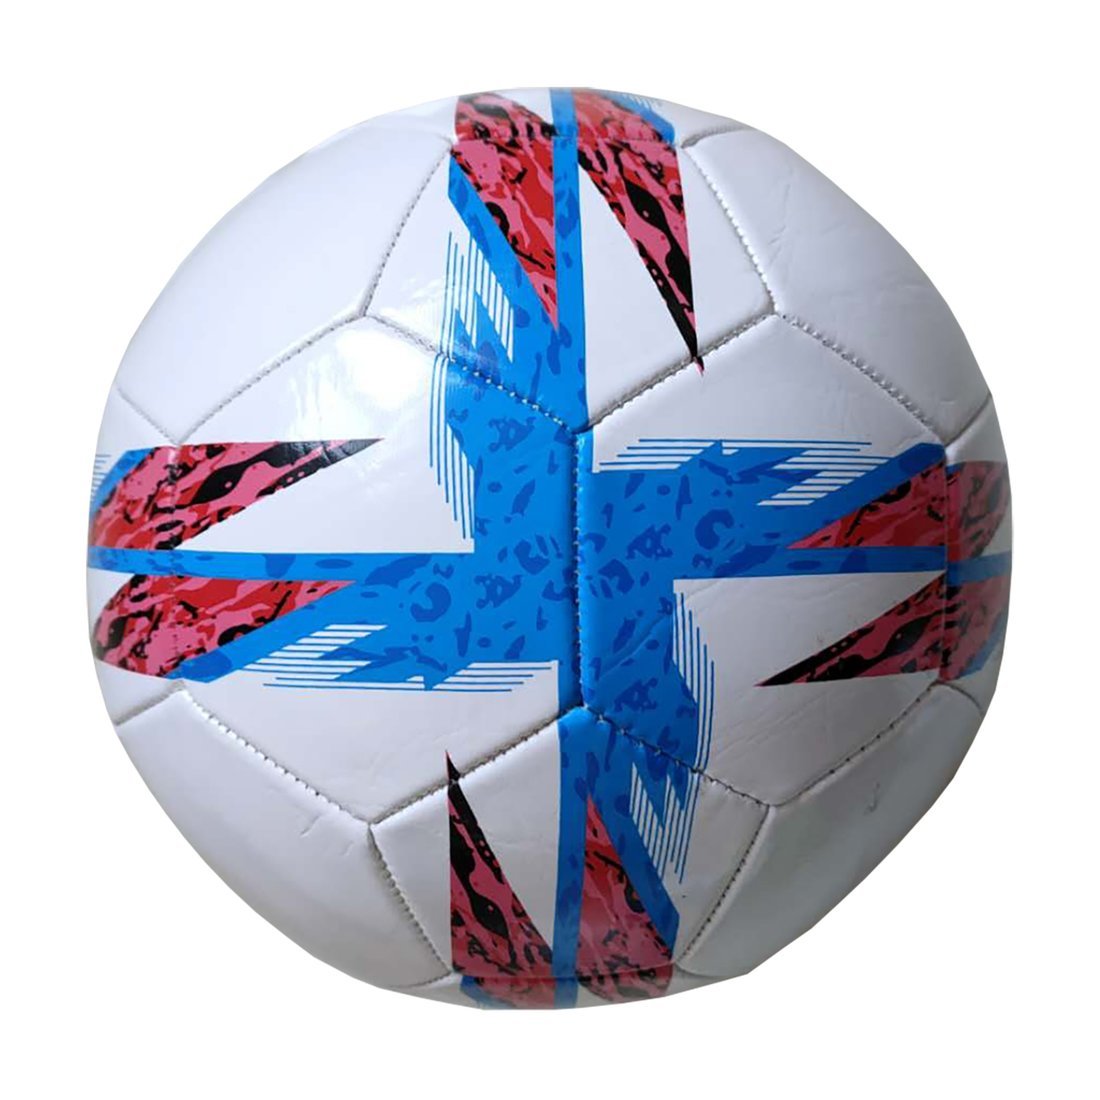 Мяч футбольный X-Match, 1 слой PVC, 1.6 mm., крест